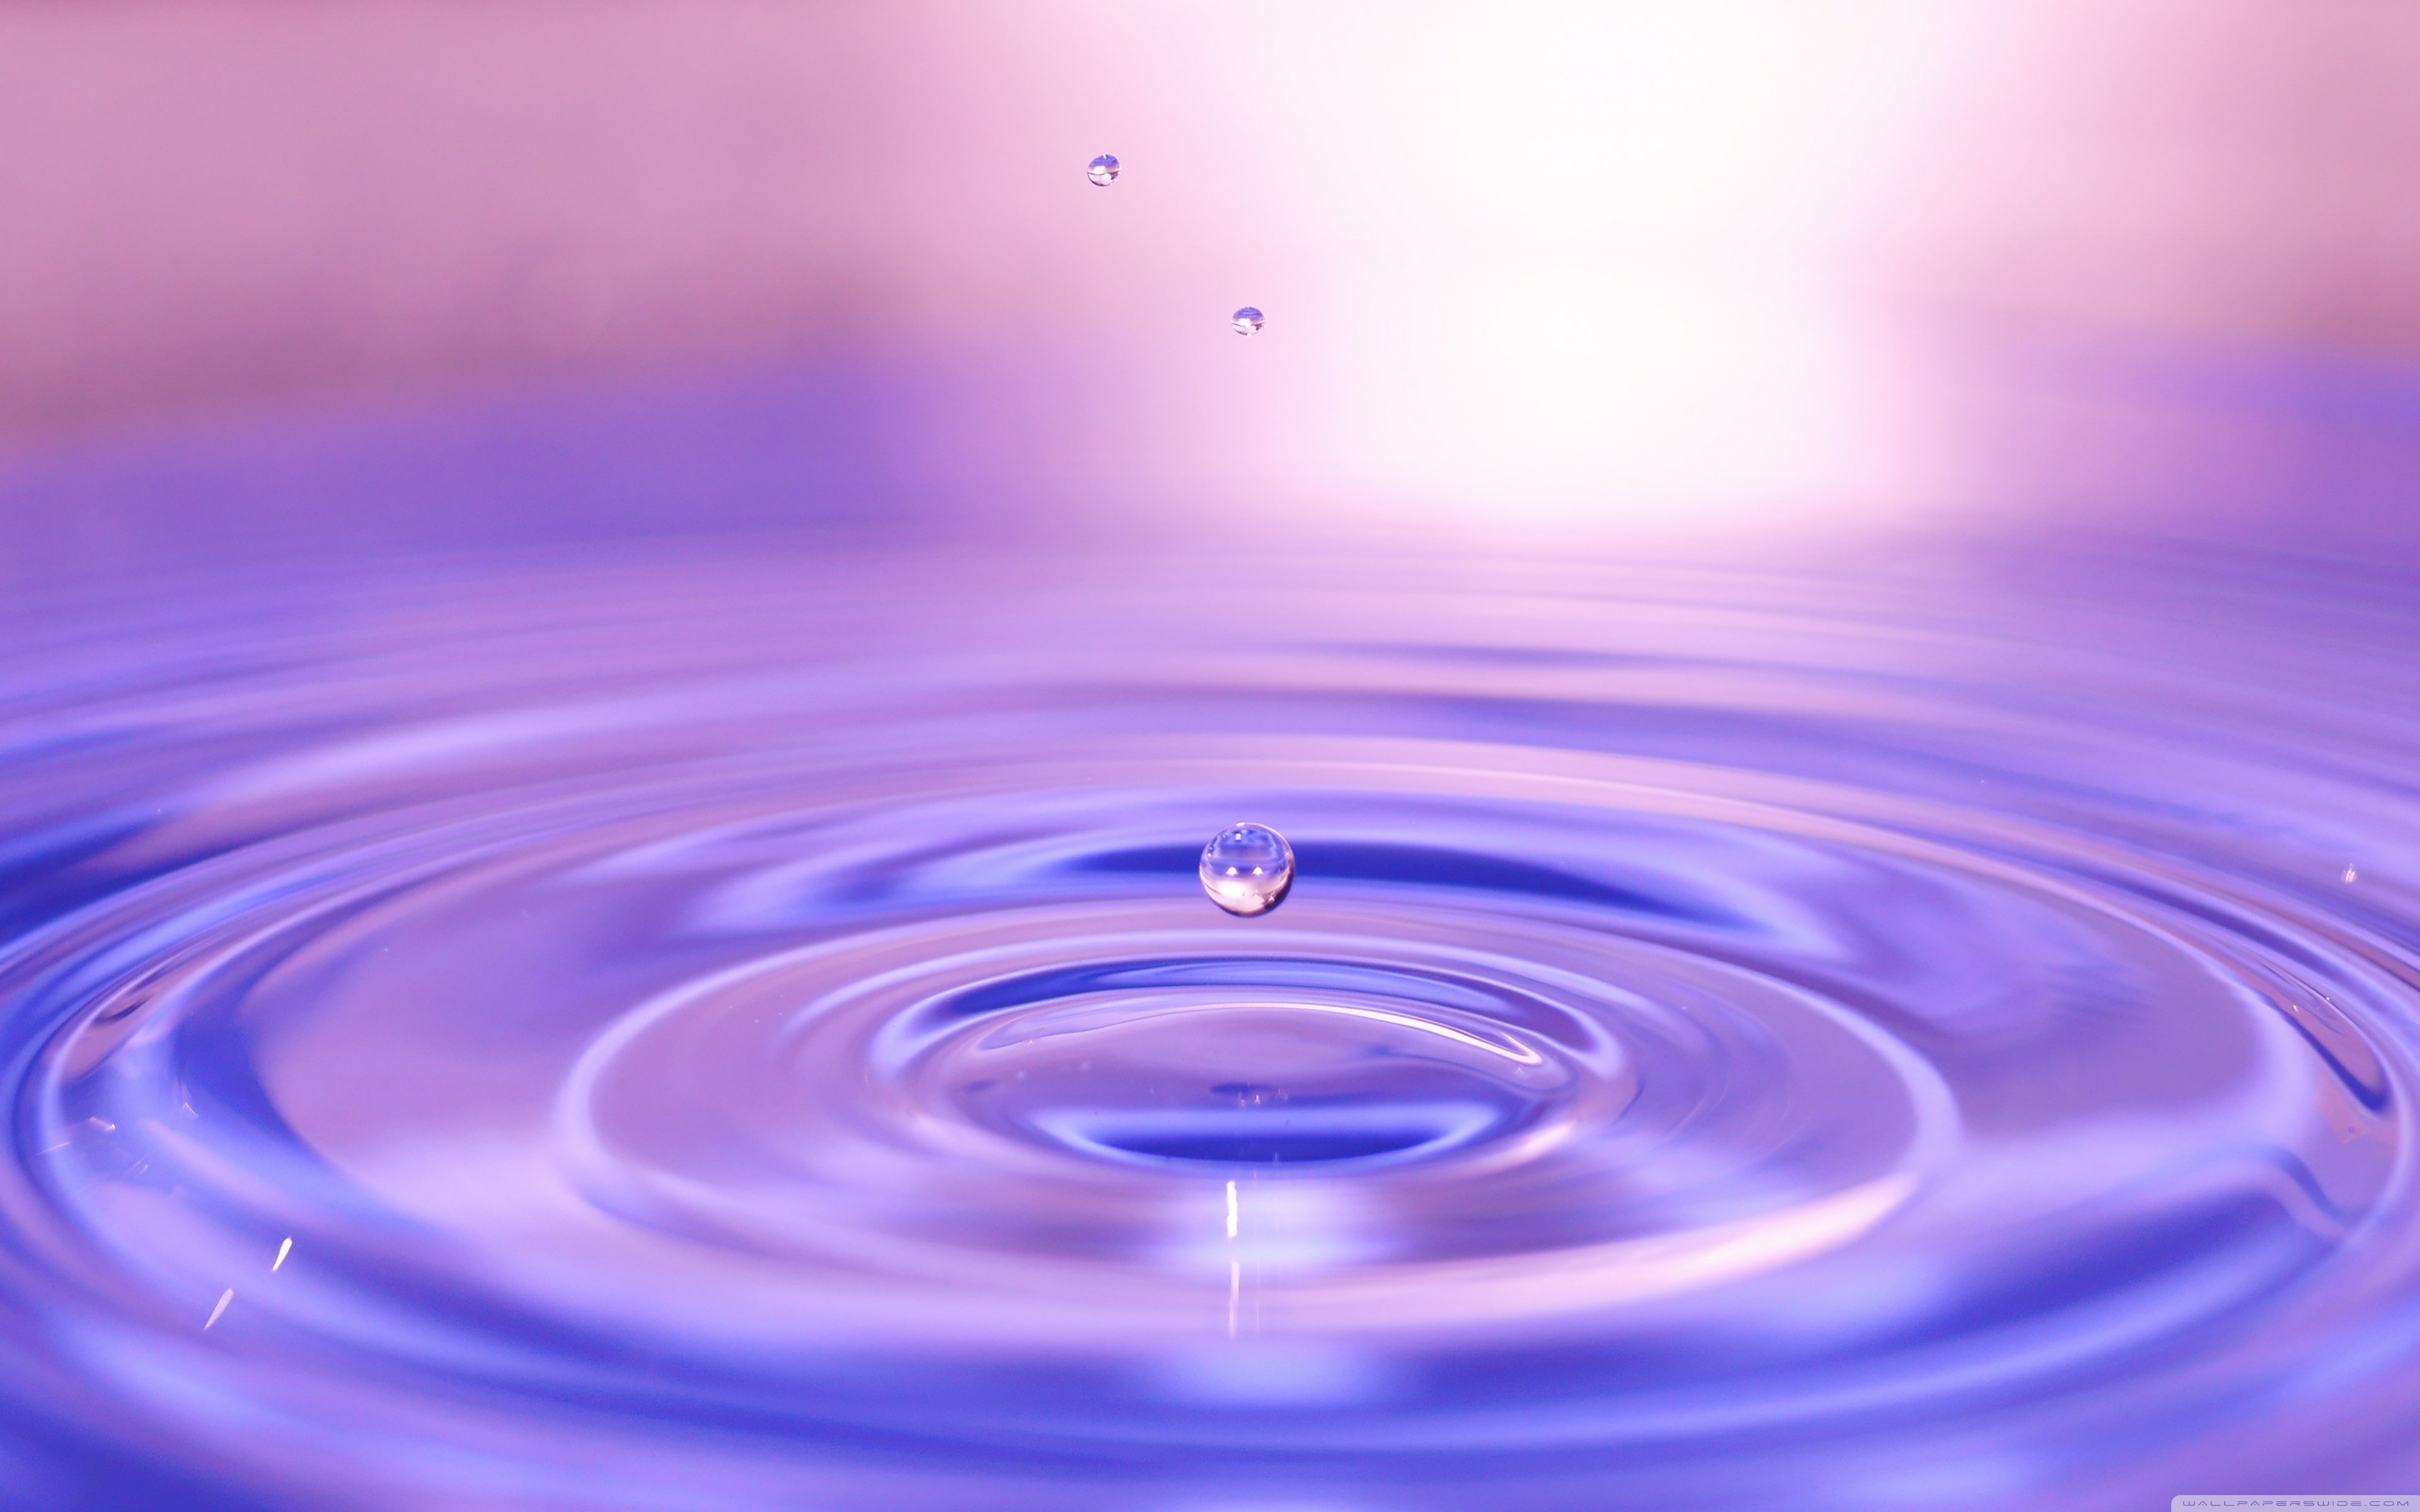 Фиолетовая вода почему. Фиолетовая вода. Фиолетовая жидкость. Круги на воде сиреневый. Всплеск фиолетовой воды.